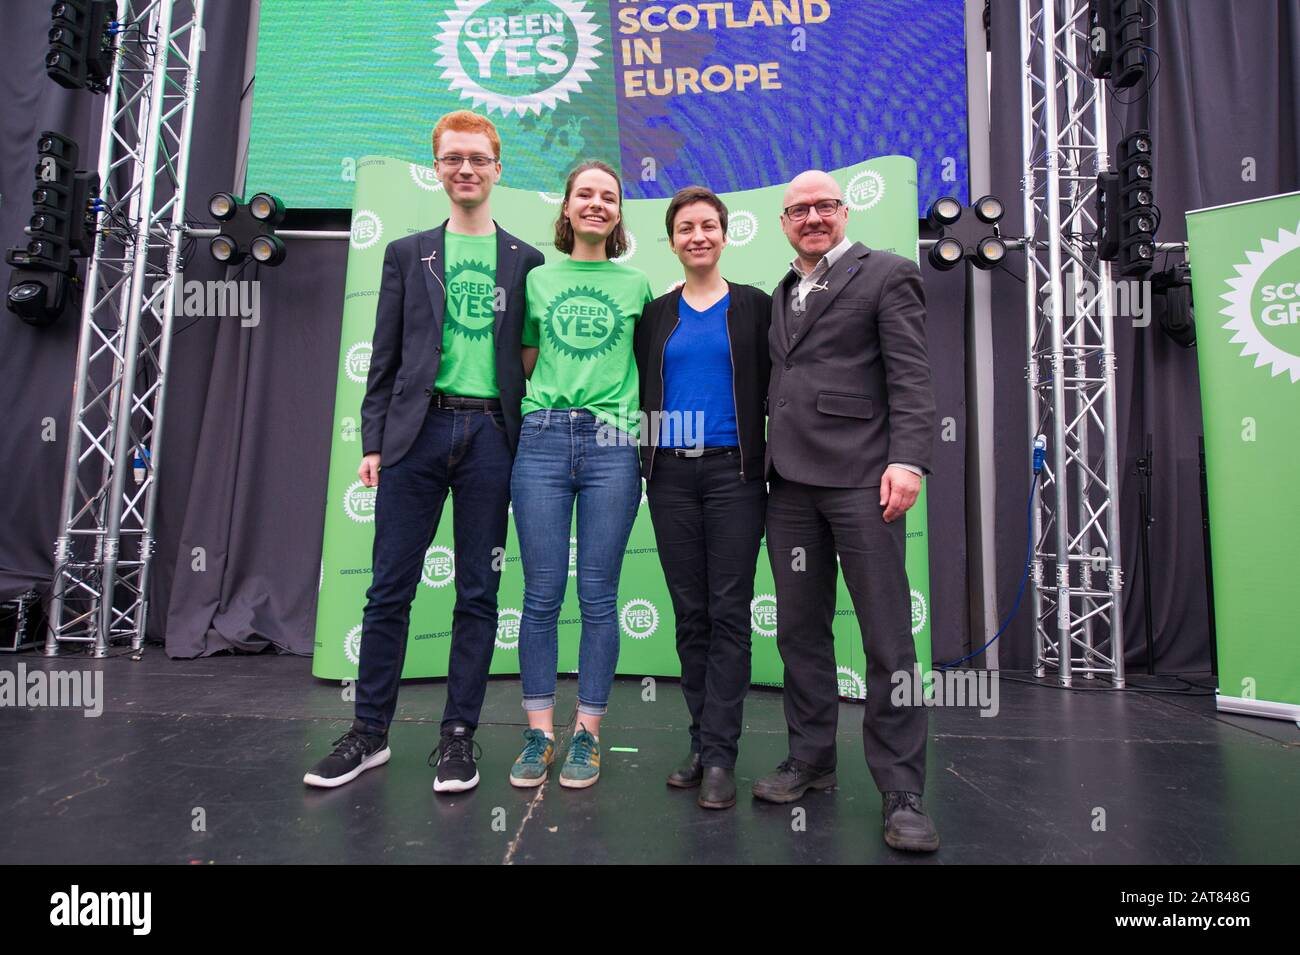 Glasgow, Royaume-Uni. 31 Janvier 2020. Photo : (L-R) Ross Greer MSP; Julia Bandel; Ska Keller eurodéputée - présidente du groupe des Verts au Parlement européen; Patrick Harvie MSP - Co leader du Parti vert écossais. Ska Keller eurodéputée - Présidente du groupe des Verts au Parlement européen. Le jour où le Royaume-Uni quitte l'Union européenne, les Verts écossais ont organisé un important rassemblement pour lancer une nouvelle campagne « Green Yes » pour que l'Écosse rejoigne à nouveau l'UE en tant que nation indépendante. Le co-dirigeant des Verts écossais Patrick Harvie est rejoint par le député européen de Ska Keller, président du groupe des Verts au Parlement européen, qui W Banque D'Images